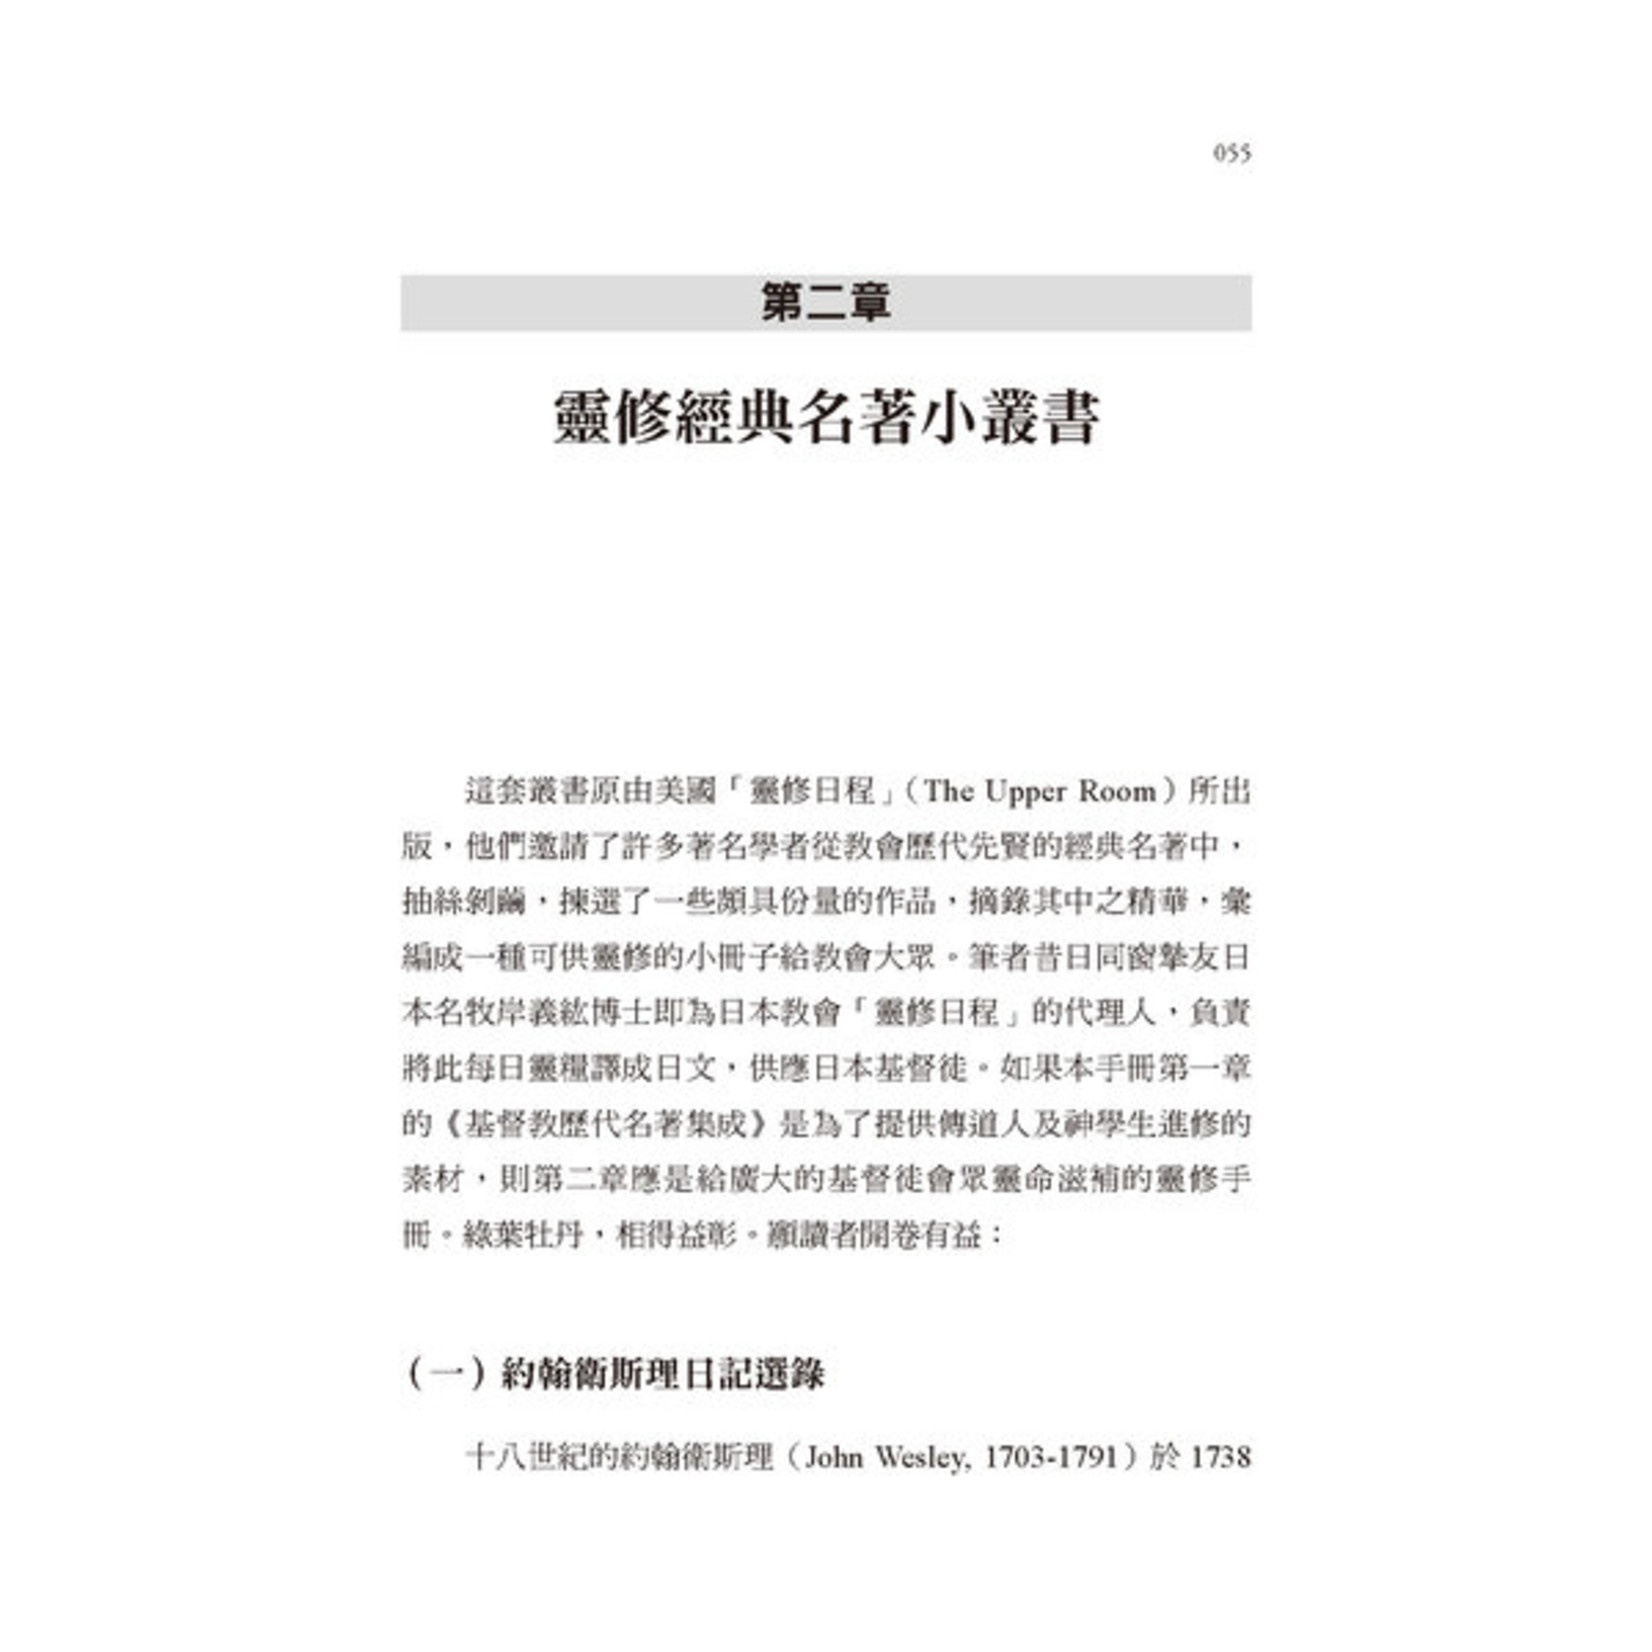 道聲 Taosheng Taiwan 聖經與西洋文學：創意的講道資源手冊續篇